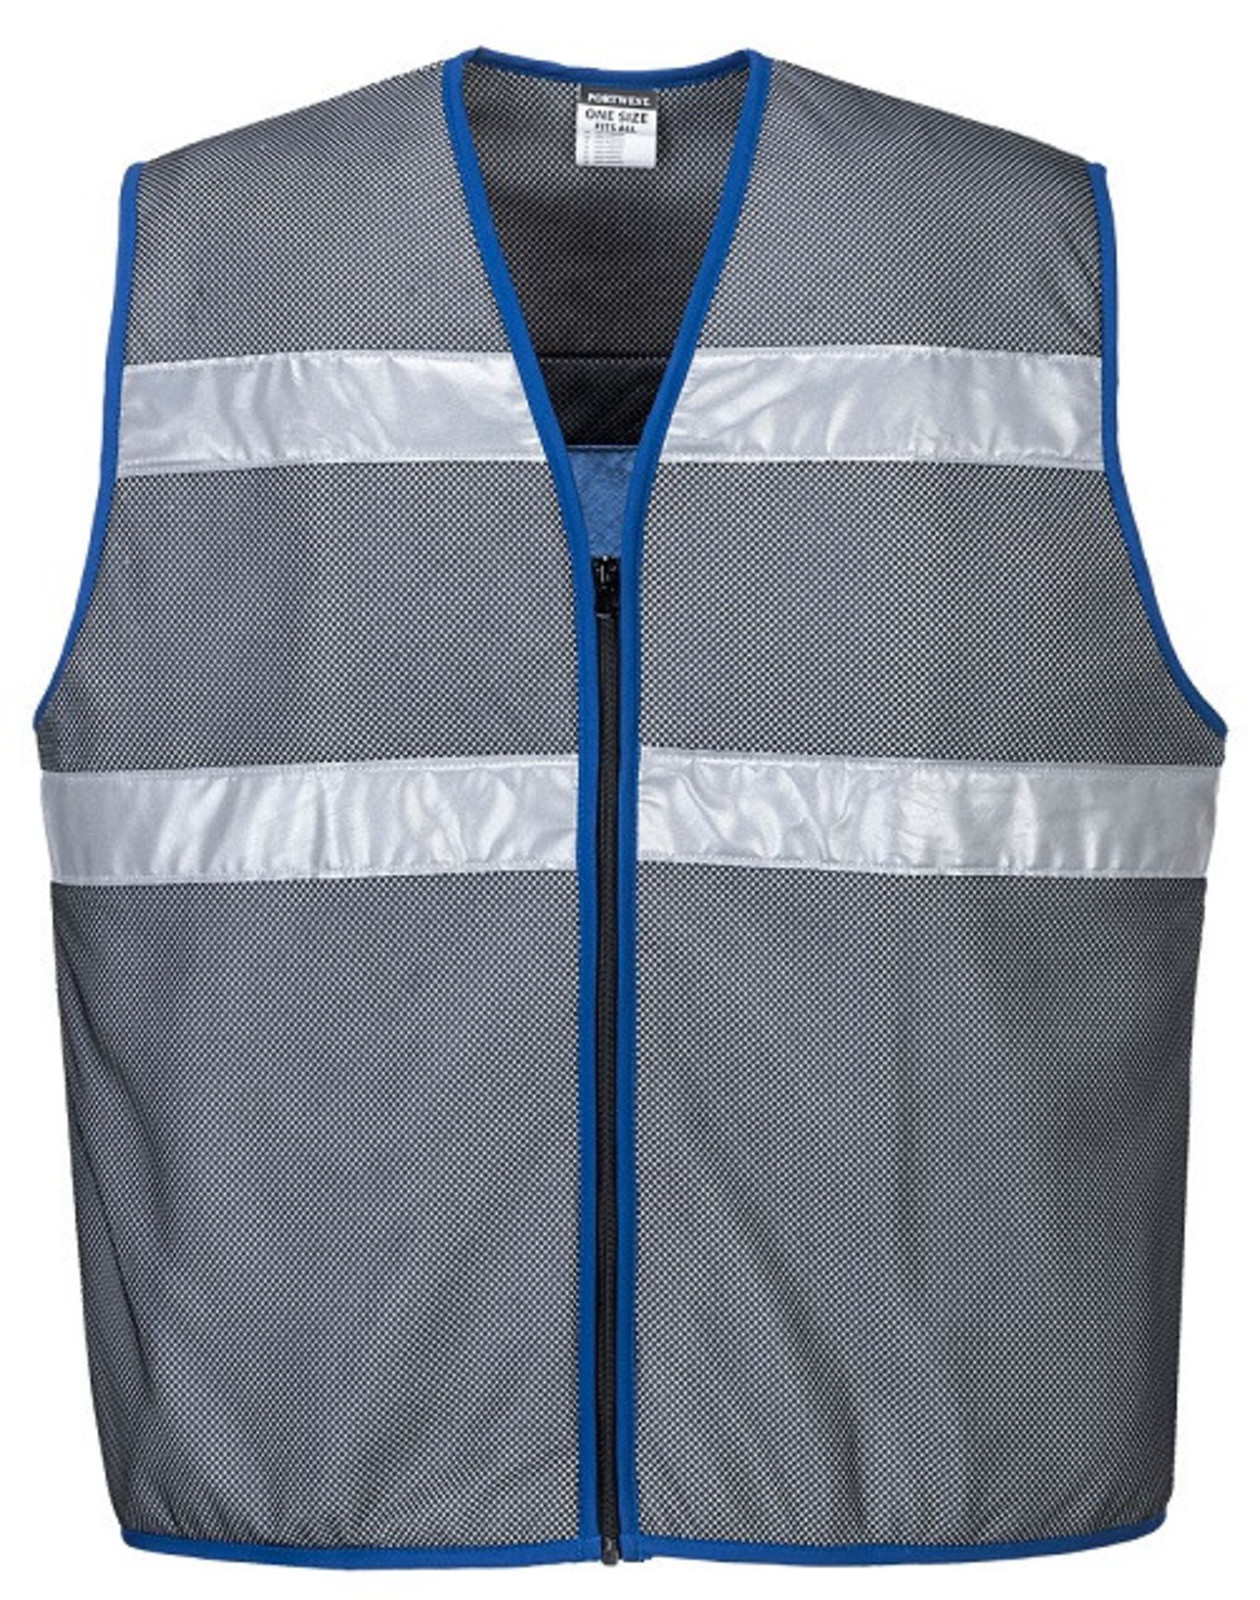 Chladiaca vesta s reflexnými pruhmi Portwest CV01  - veľkosť: L/XL, farba: sivá